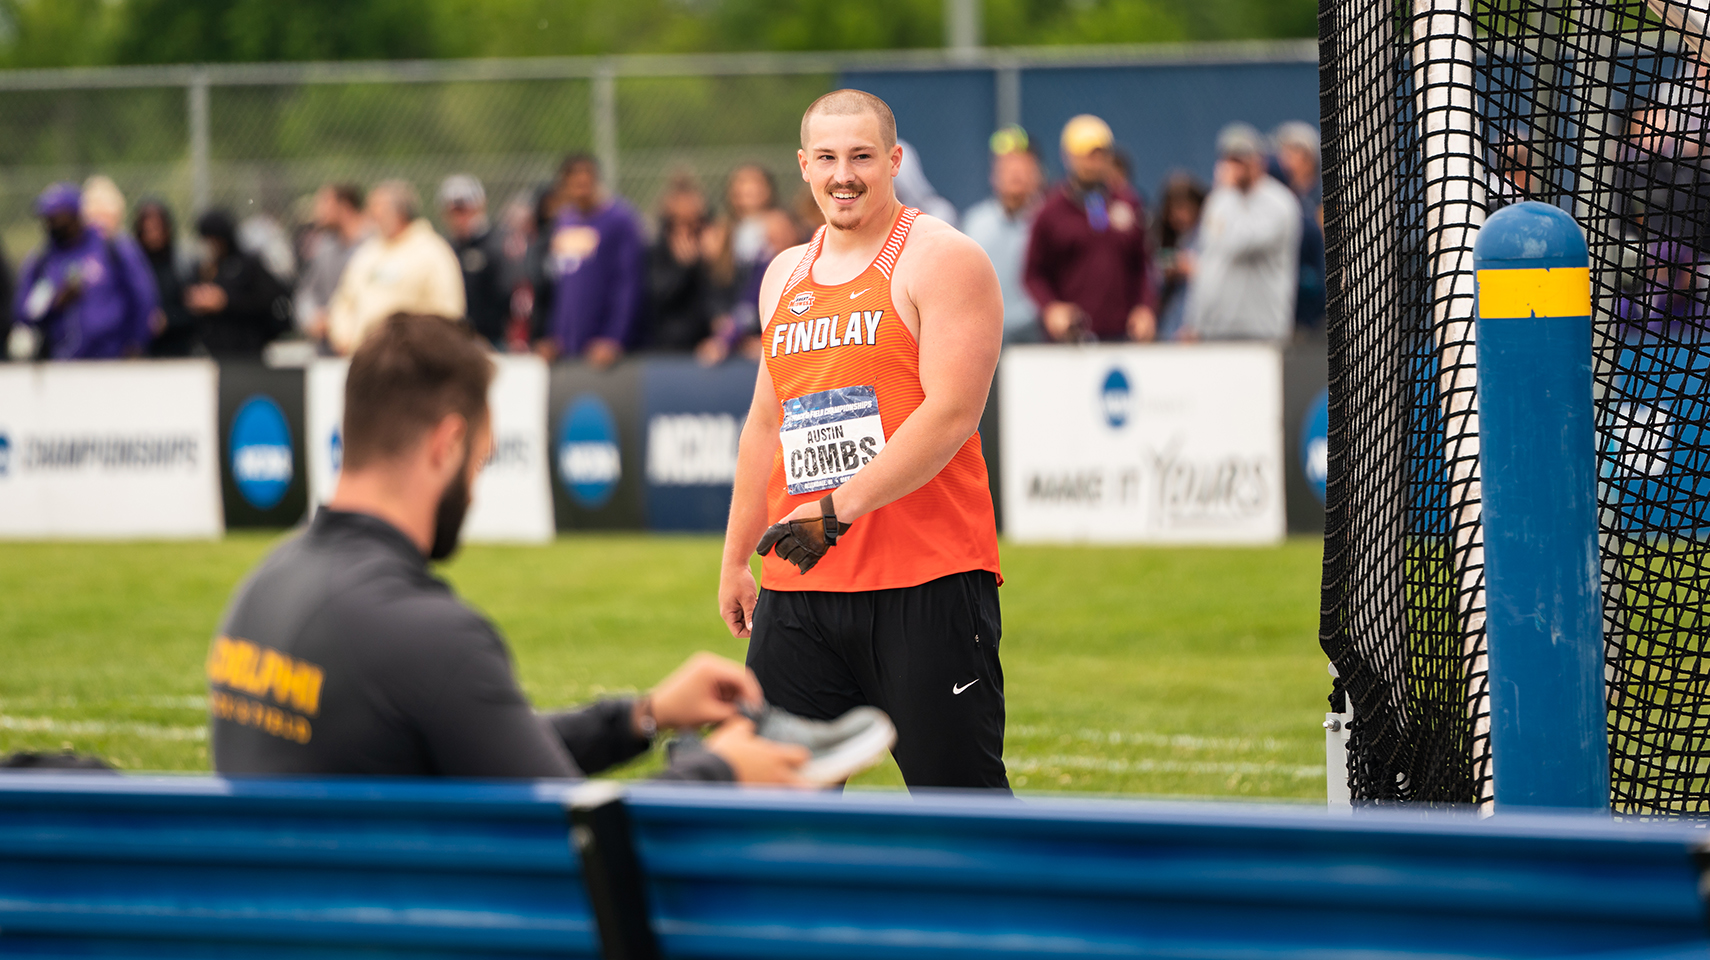 Men's track athlete in orange smiling